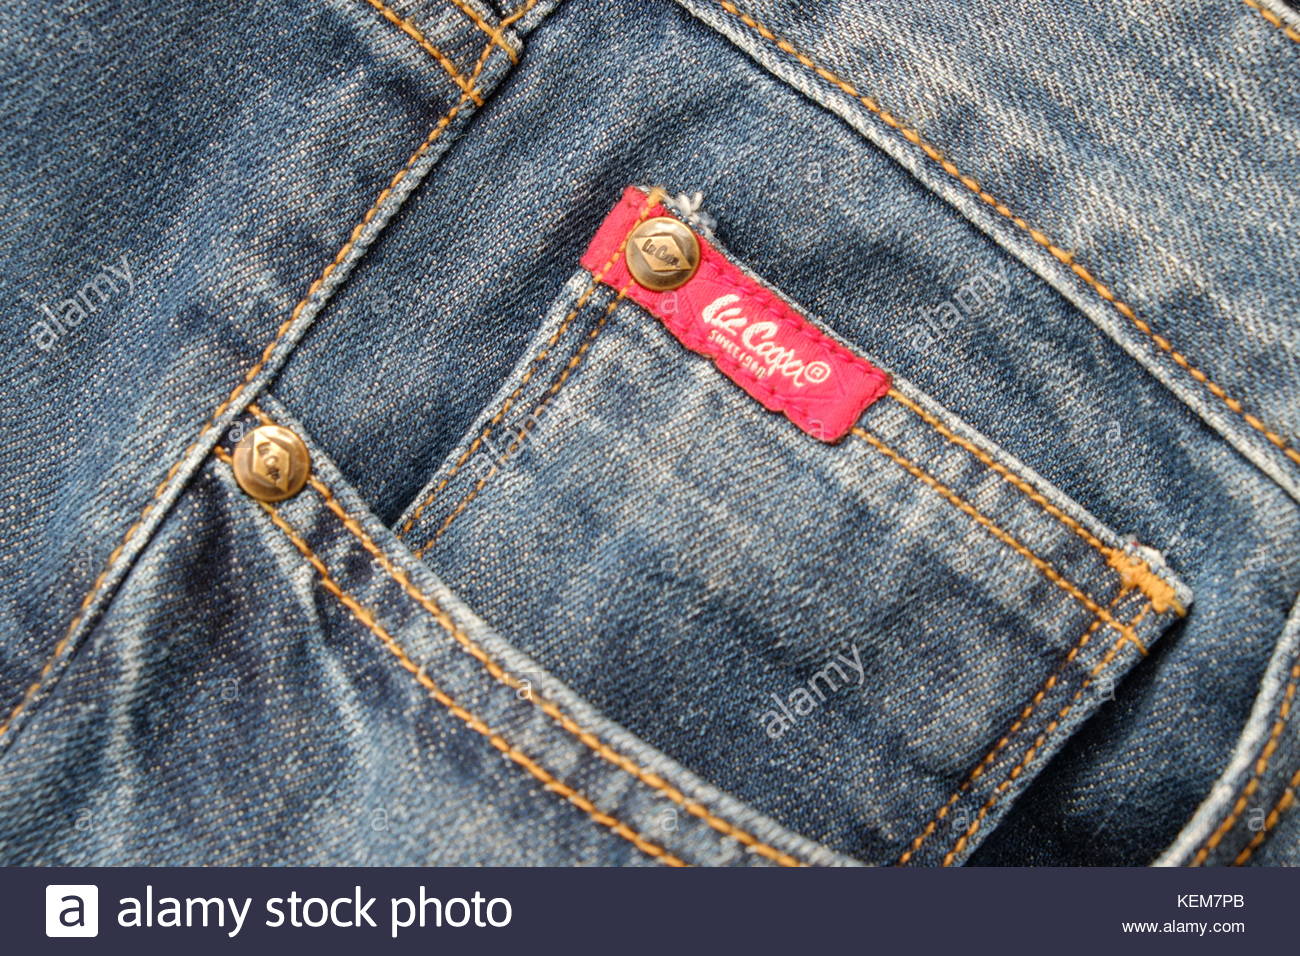 lee jeans tag